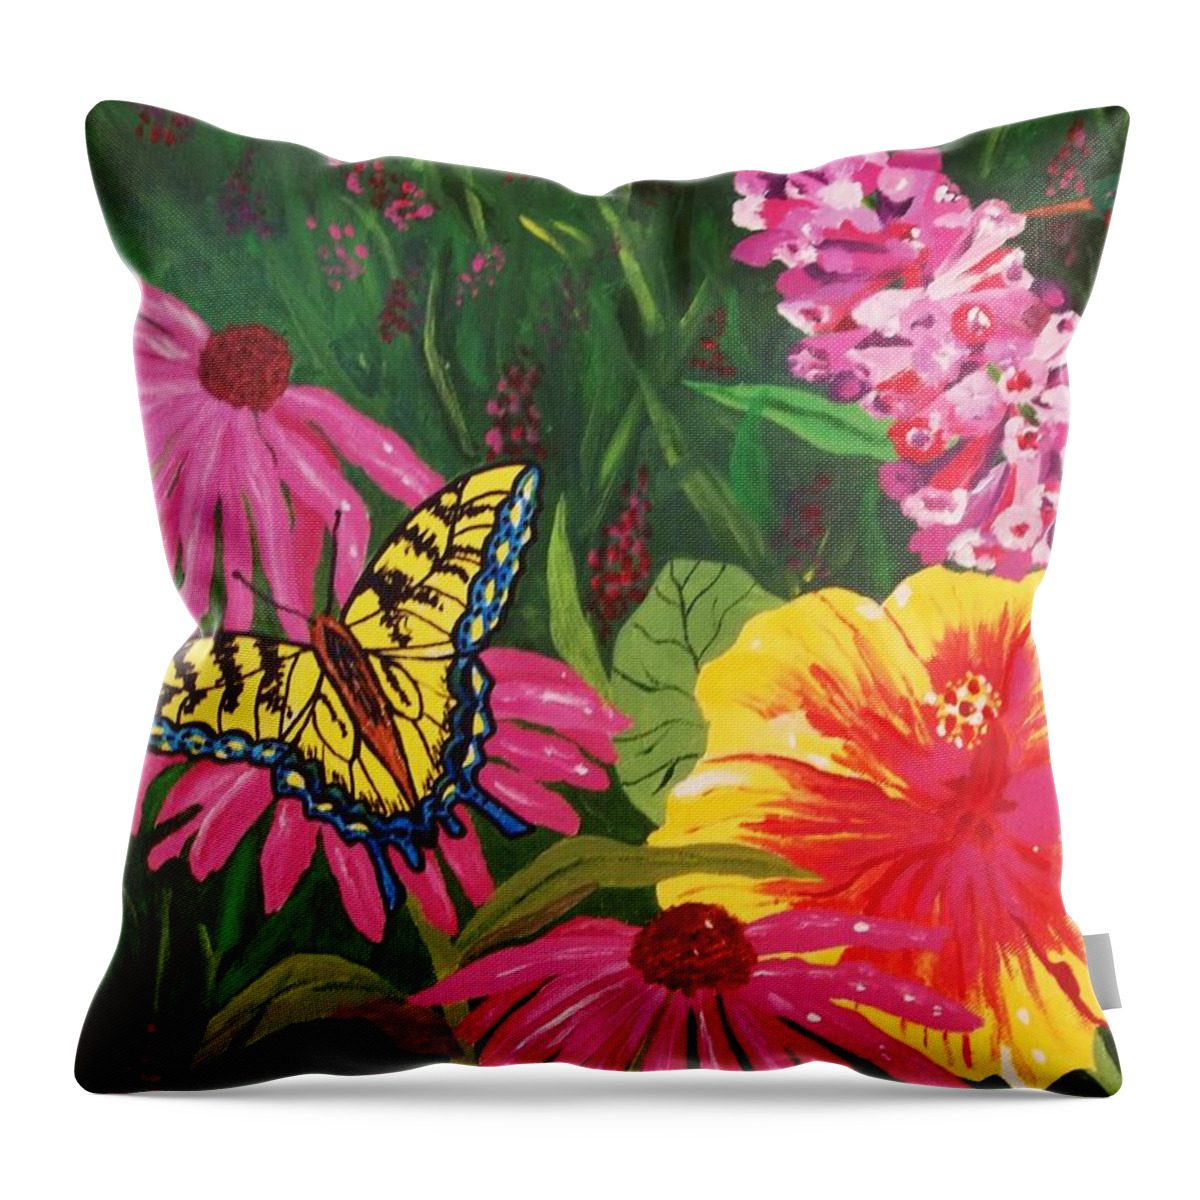 Butterfly Garden Throw Pillow featuring the painting Summer Garden by Ellen Levinson